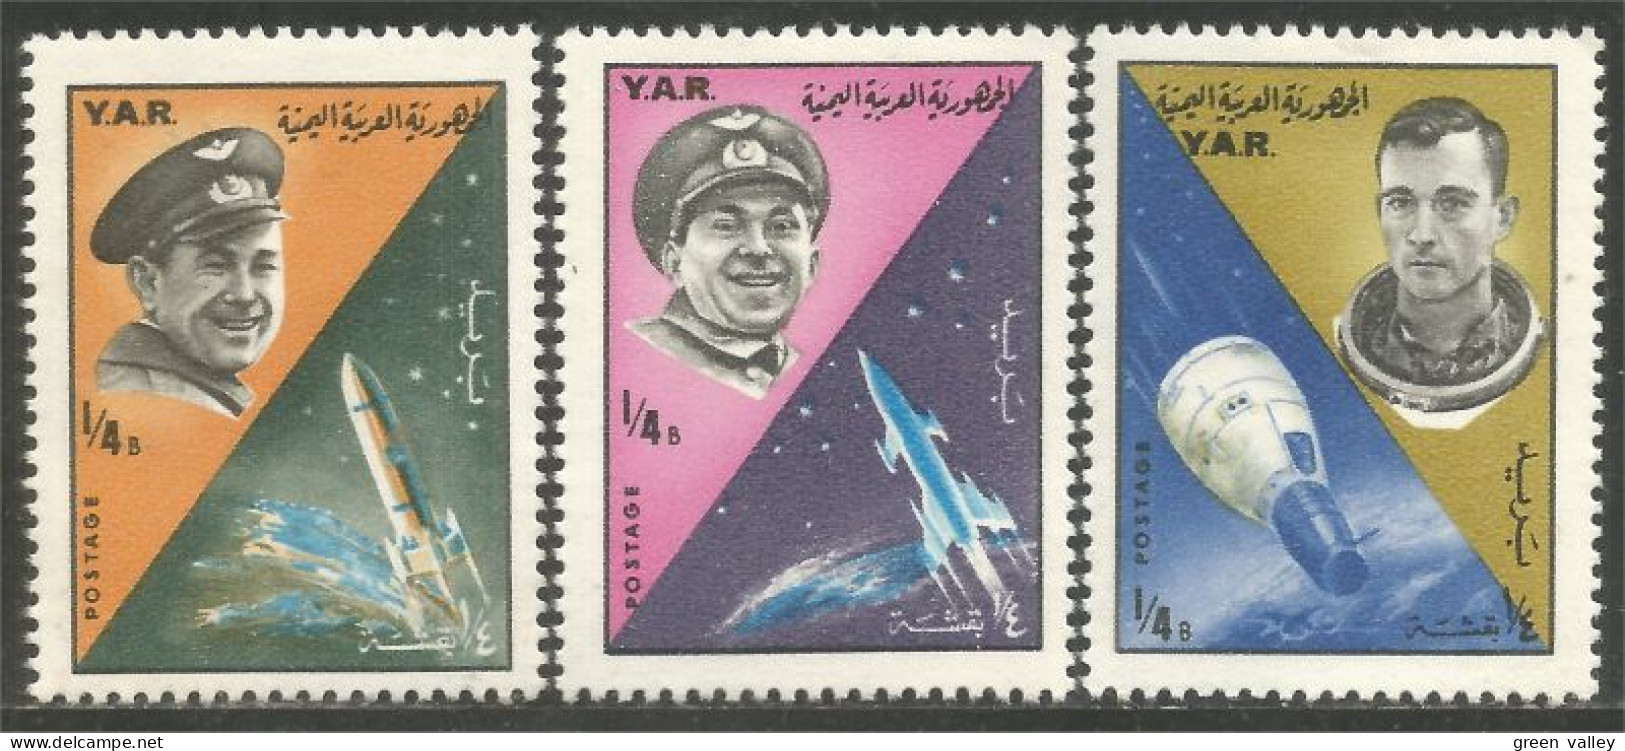 950 Yemen Espace Cosmonautes Russes Russian Cosmonauts Space MH * Neuf (YEM-64) - Yemen